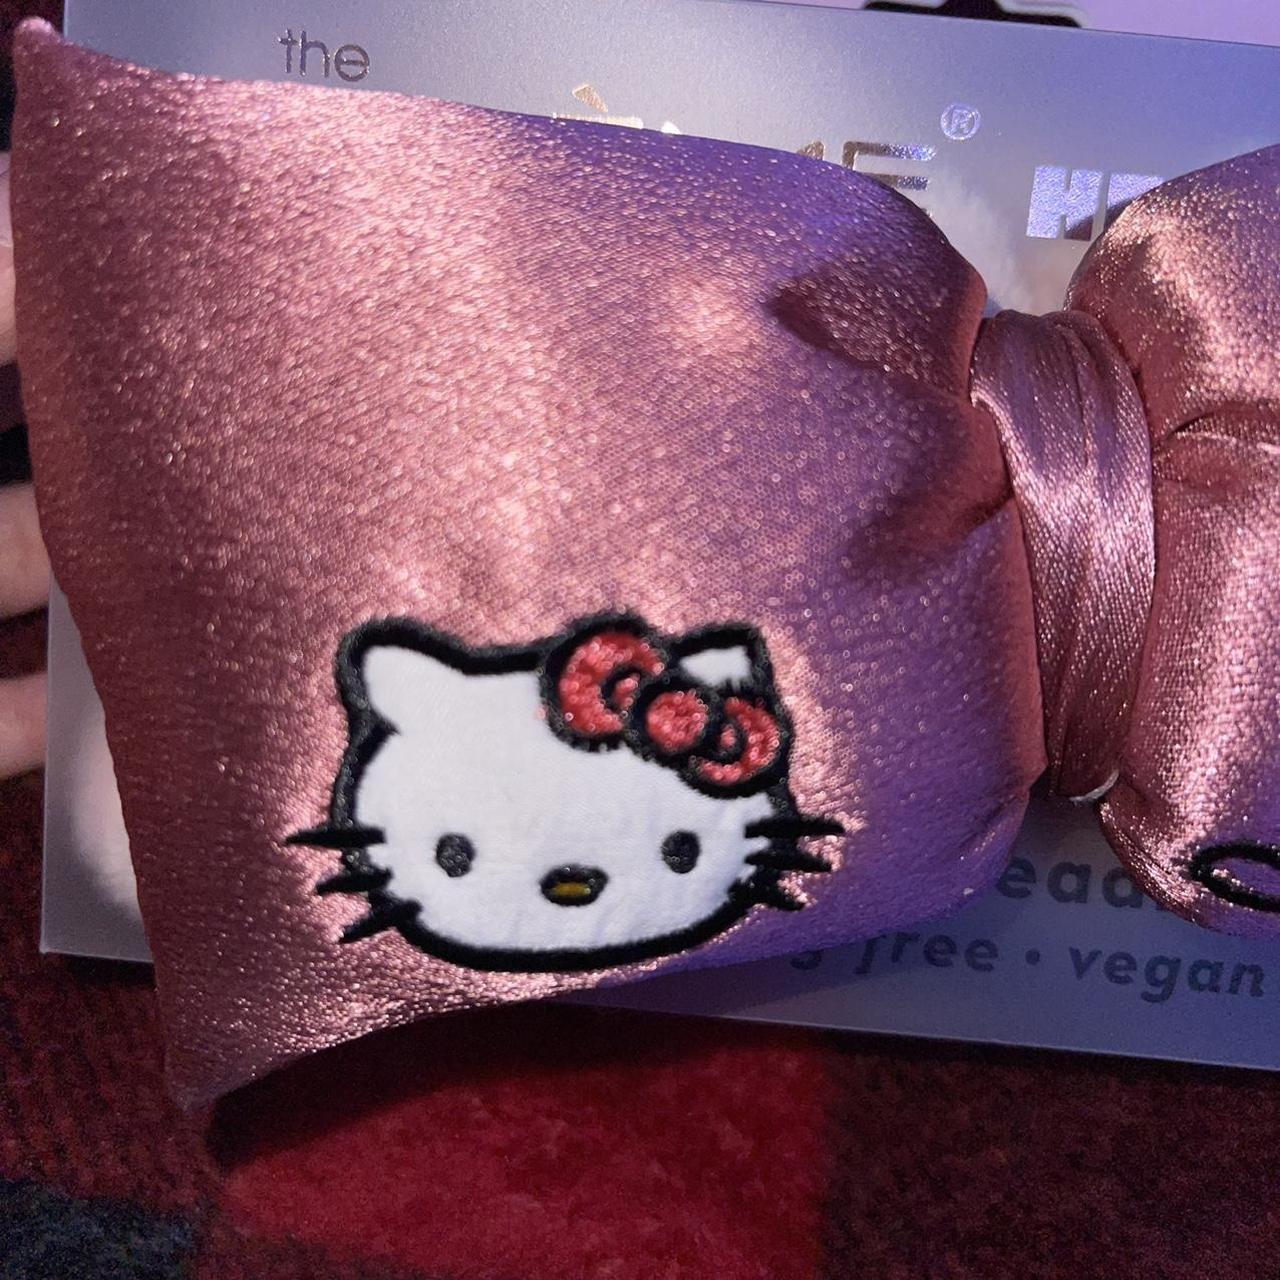 Product Image 2 - Hello Kitty Spa Headband

hello kitty